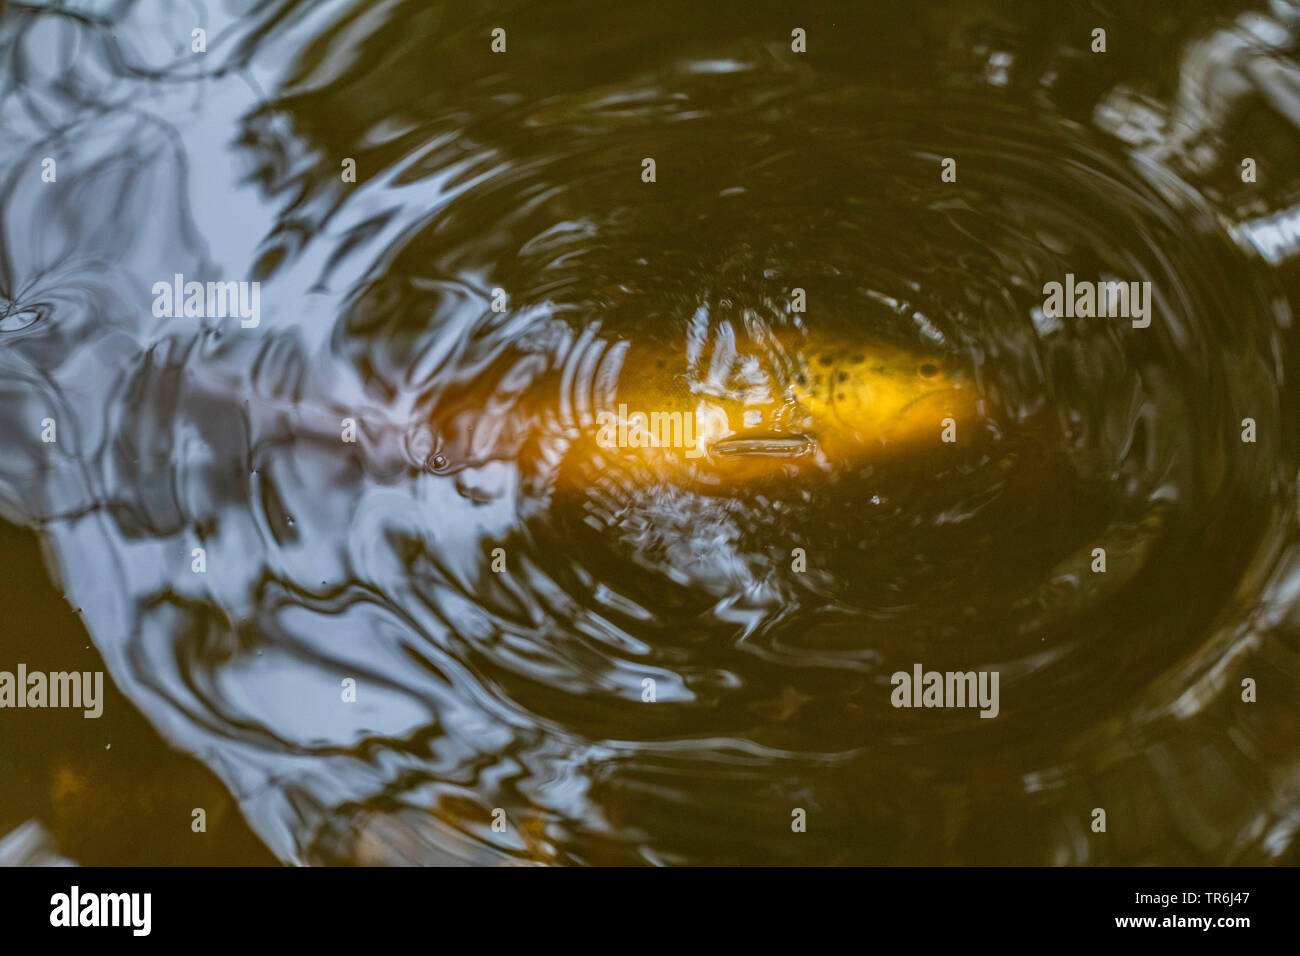 La truite brune, la truite de rivière, l'omble de fontaine (Salmo trutta fario), Wilf morts sous forme de fontaine après une décharge de fertilser, Germany Banque D'Images